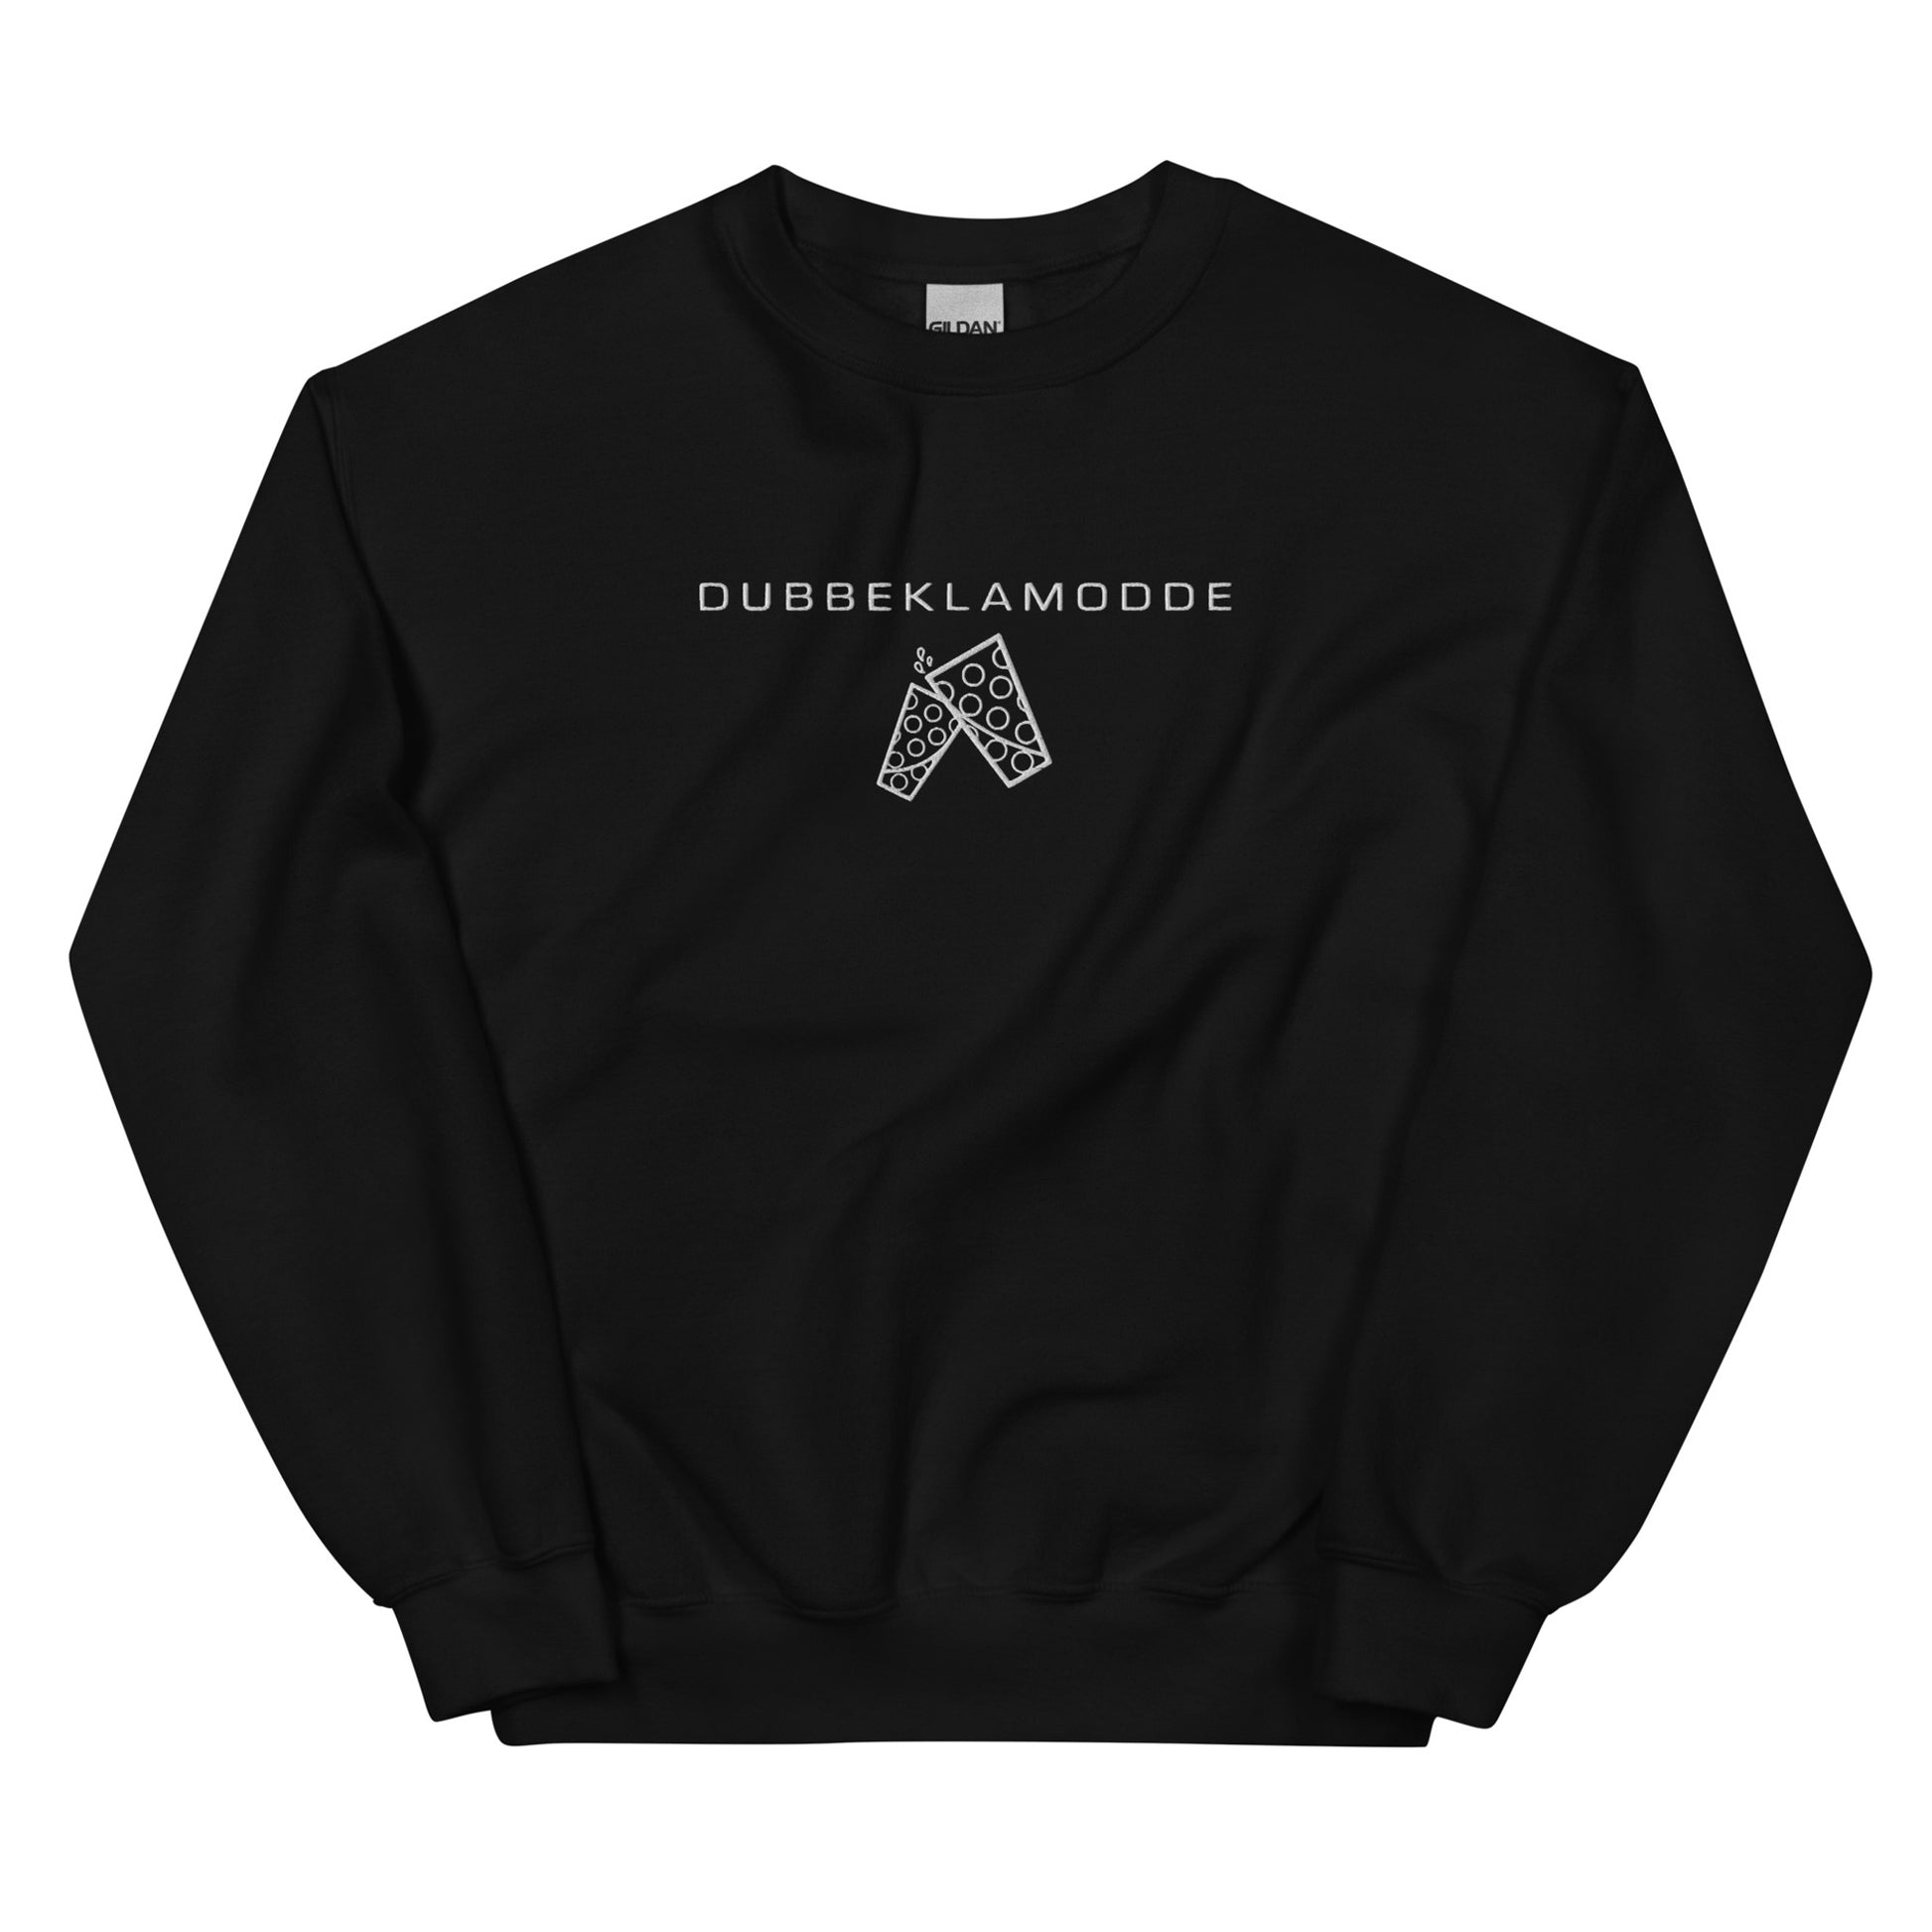 Dubbe Basic Sweatshirt - DUBBEKLAMODDE